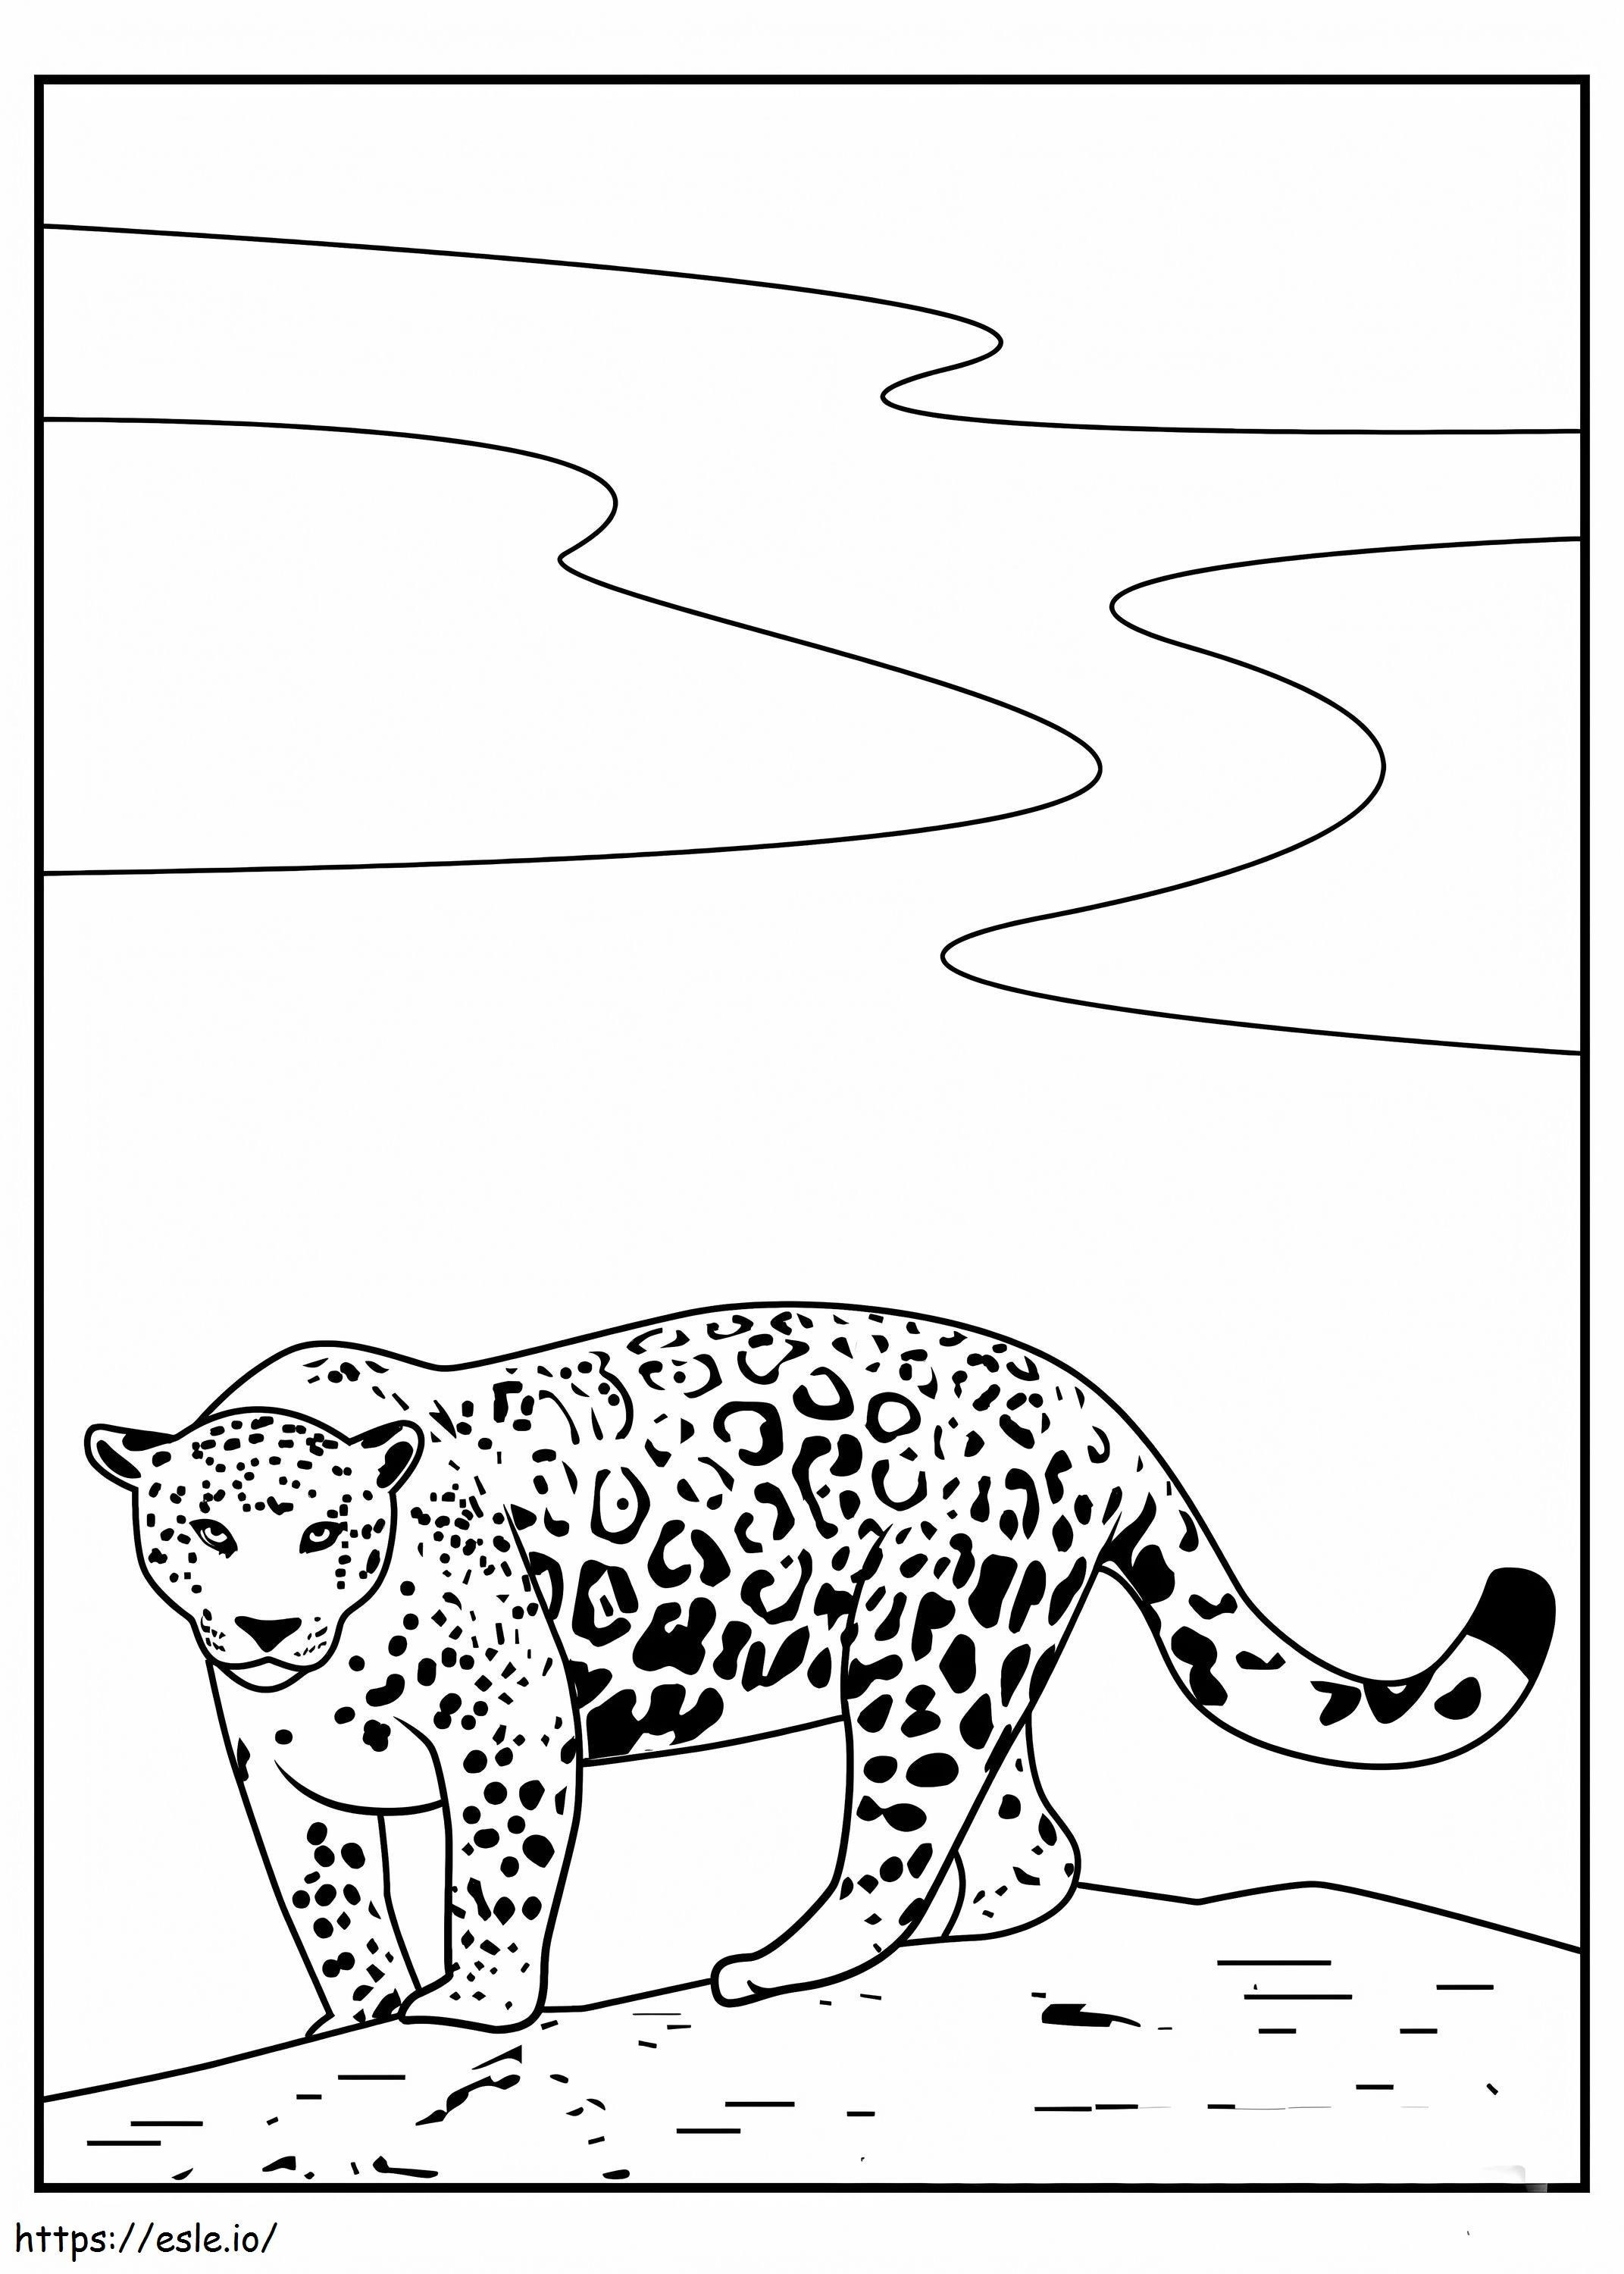 Simple Jaguar coloring page